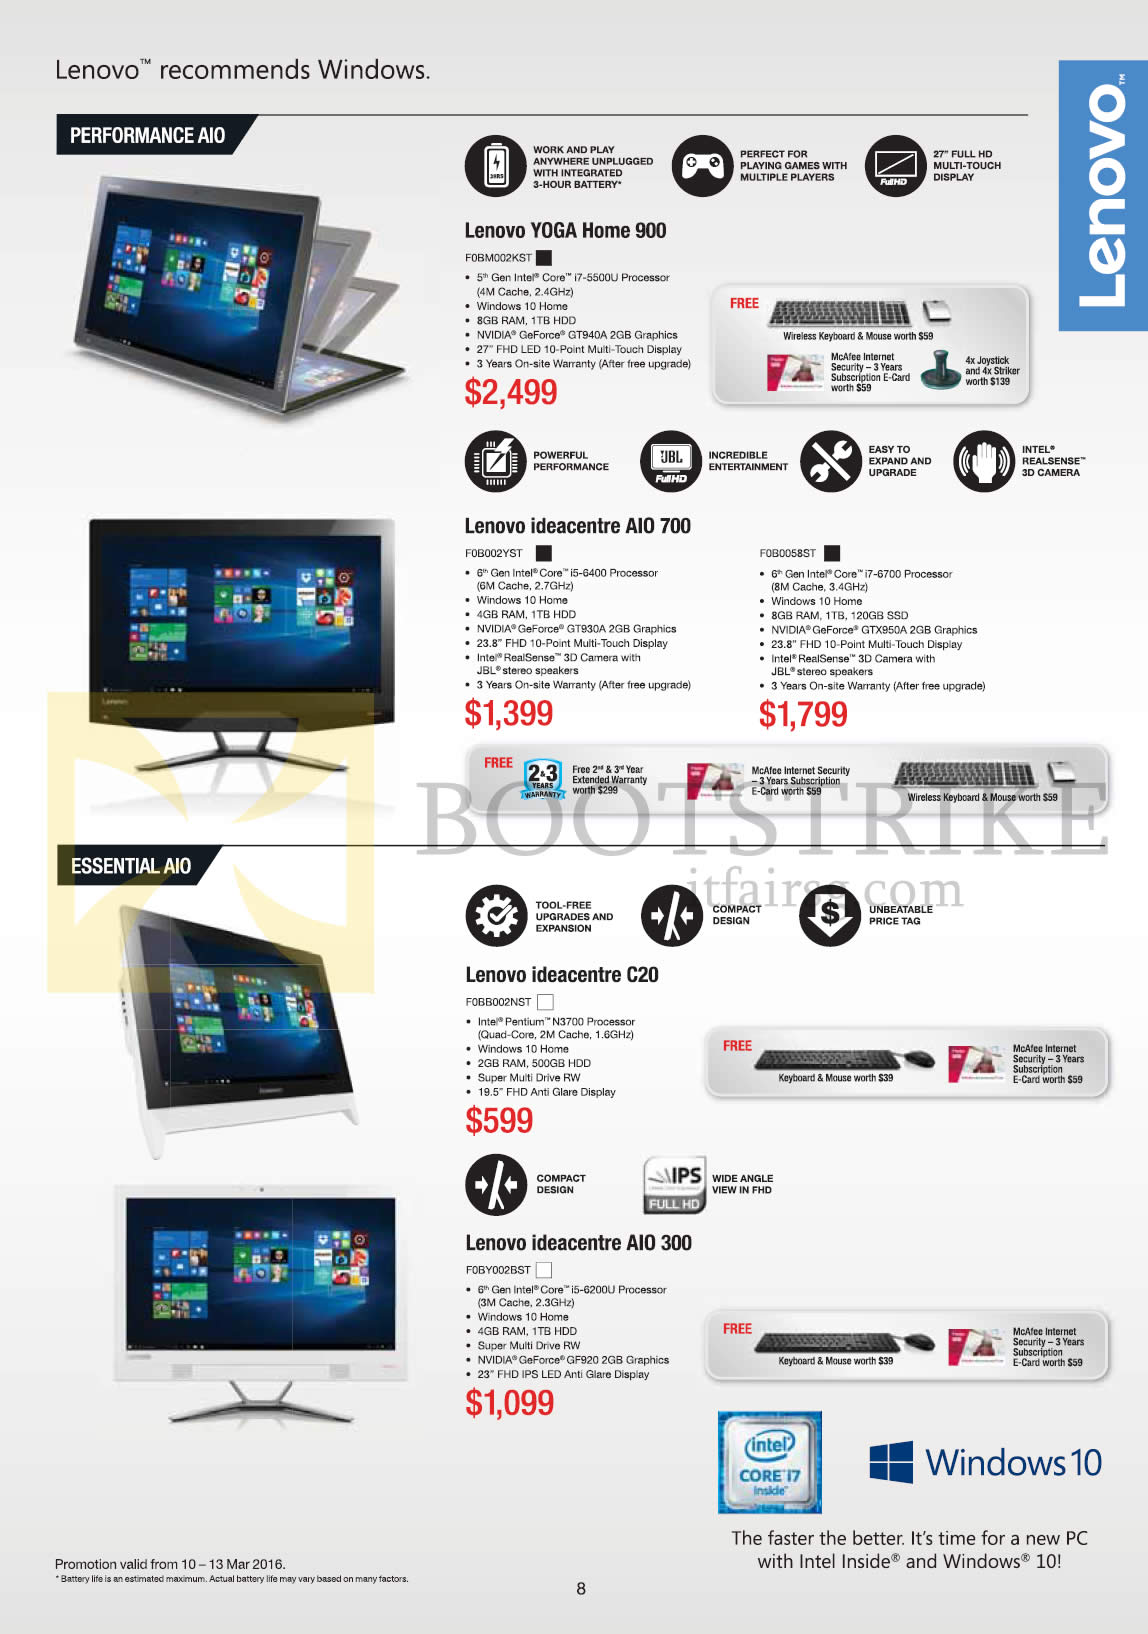 IT SHOW 2016 price list image brochure of Lenovo AIO Desktop PCs Yoga Home 900, Ideacentre AIO 700, 300, C20